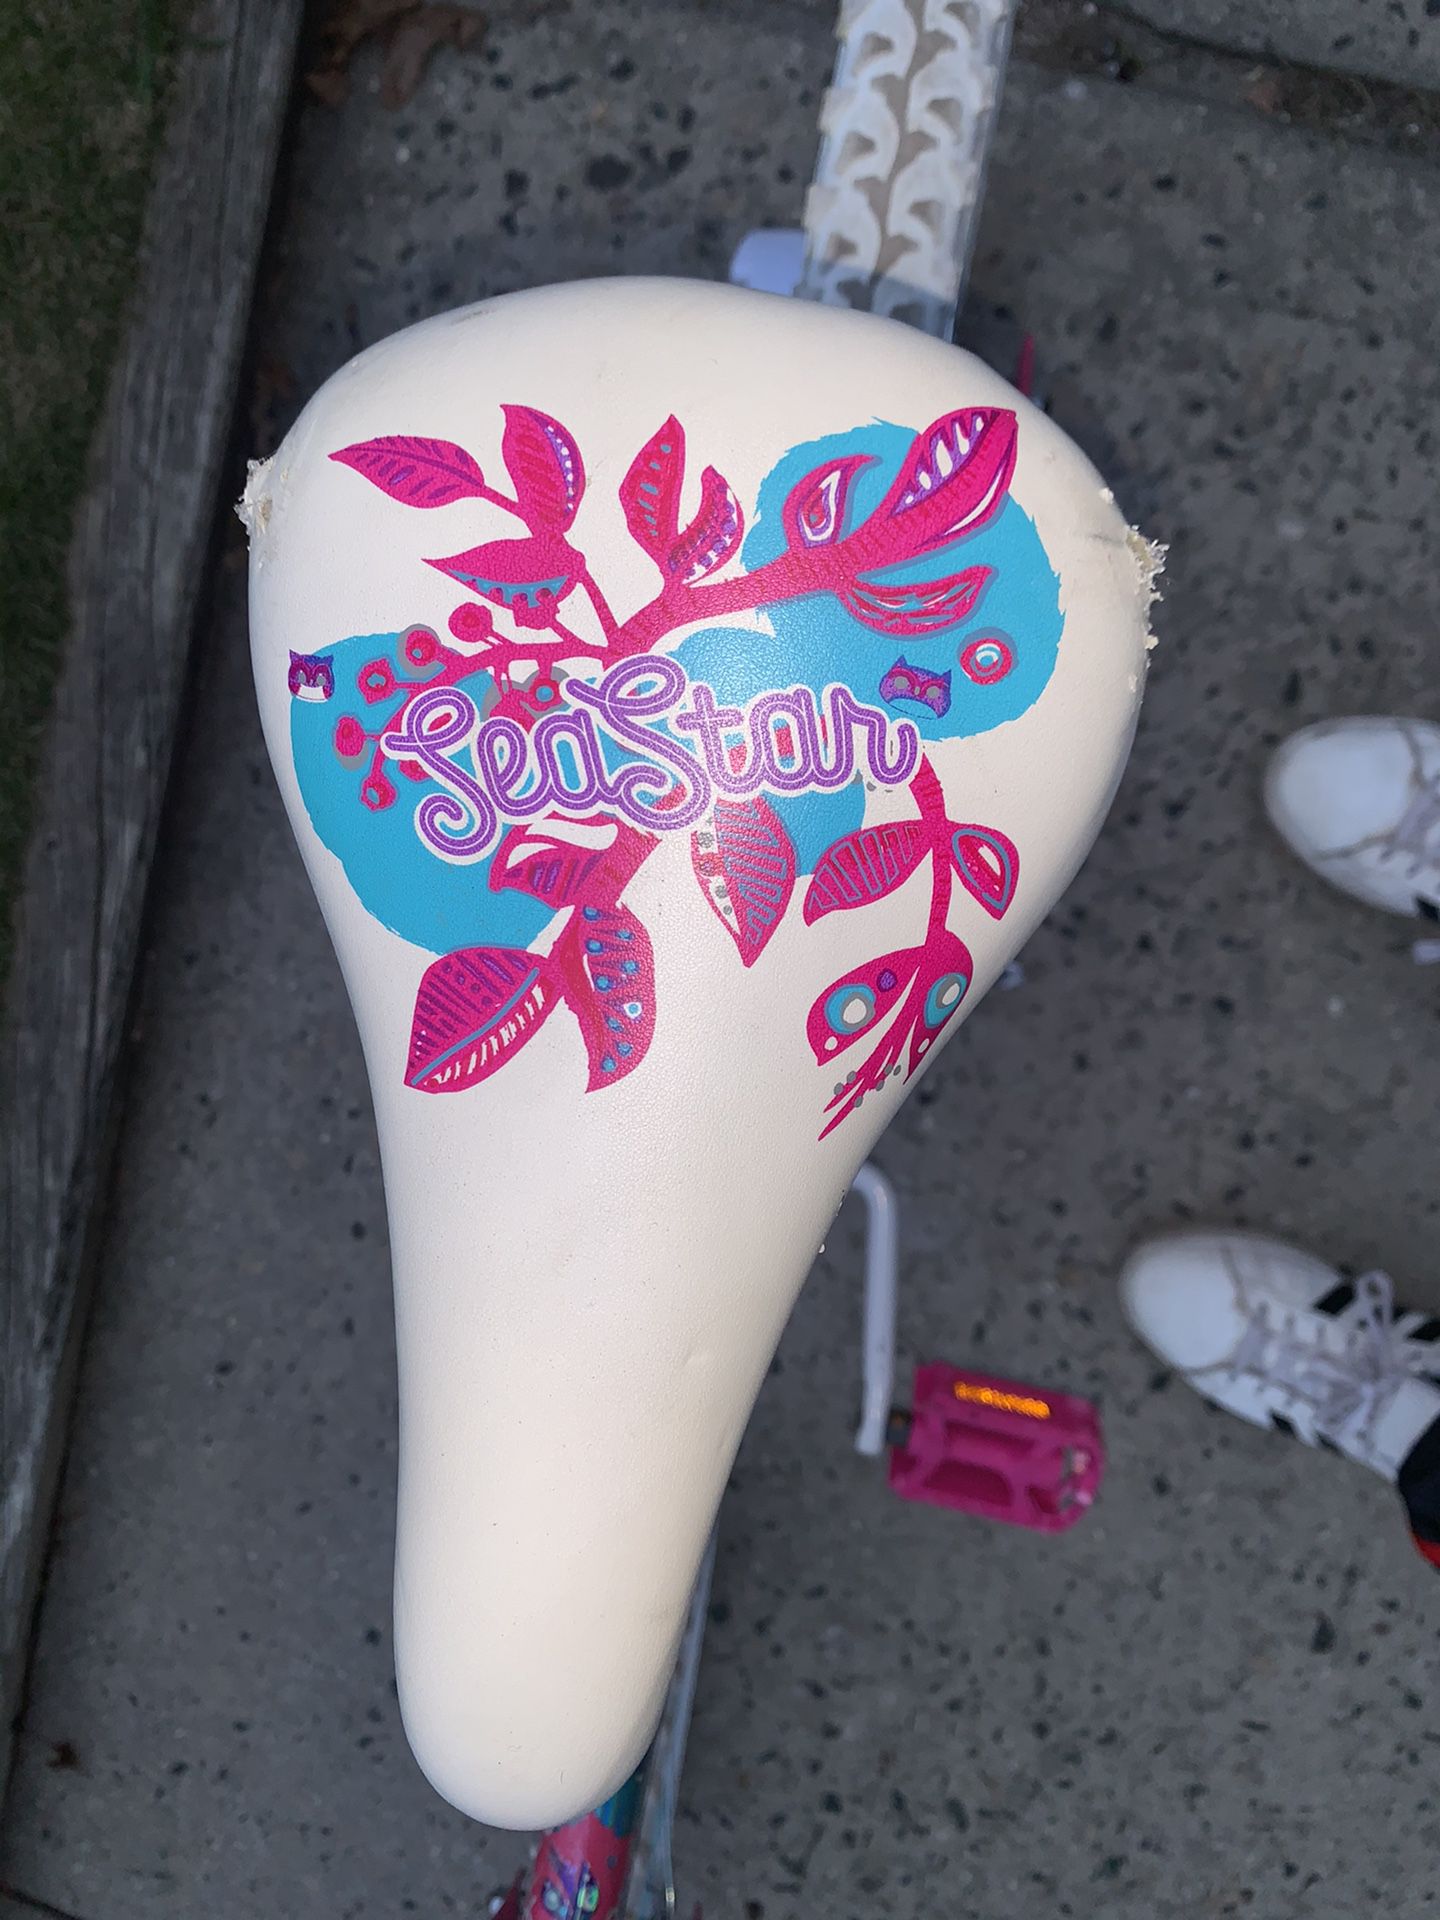 Huffy 20" Sea Star Girls' Bike, Pink $35